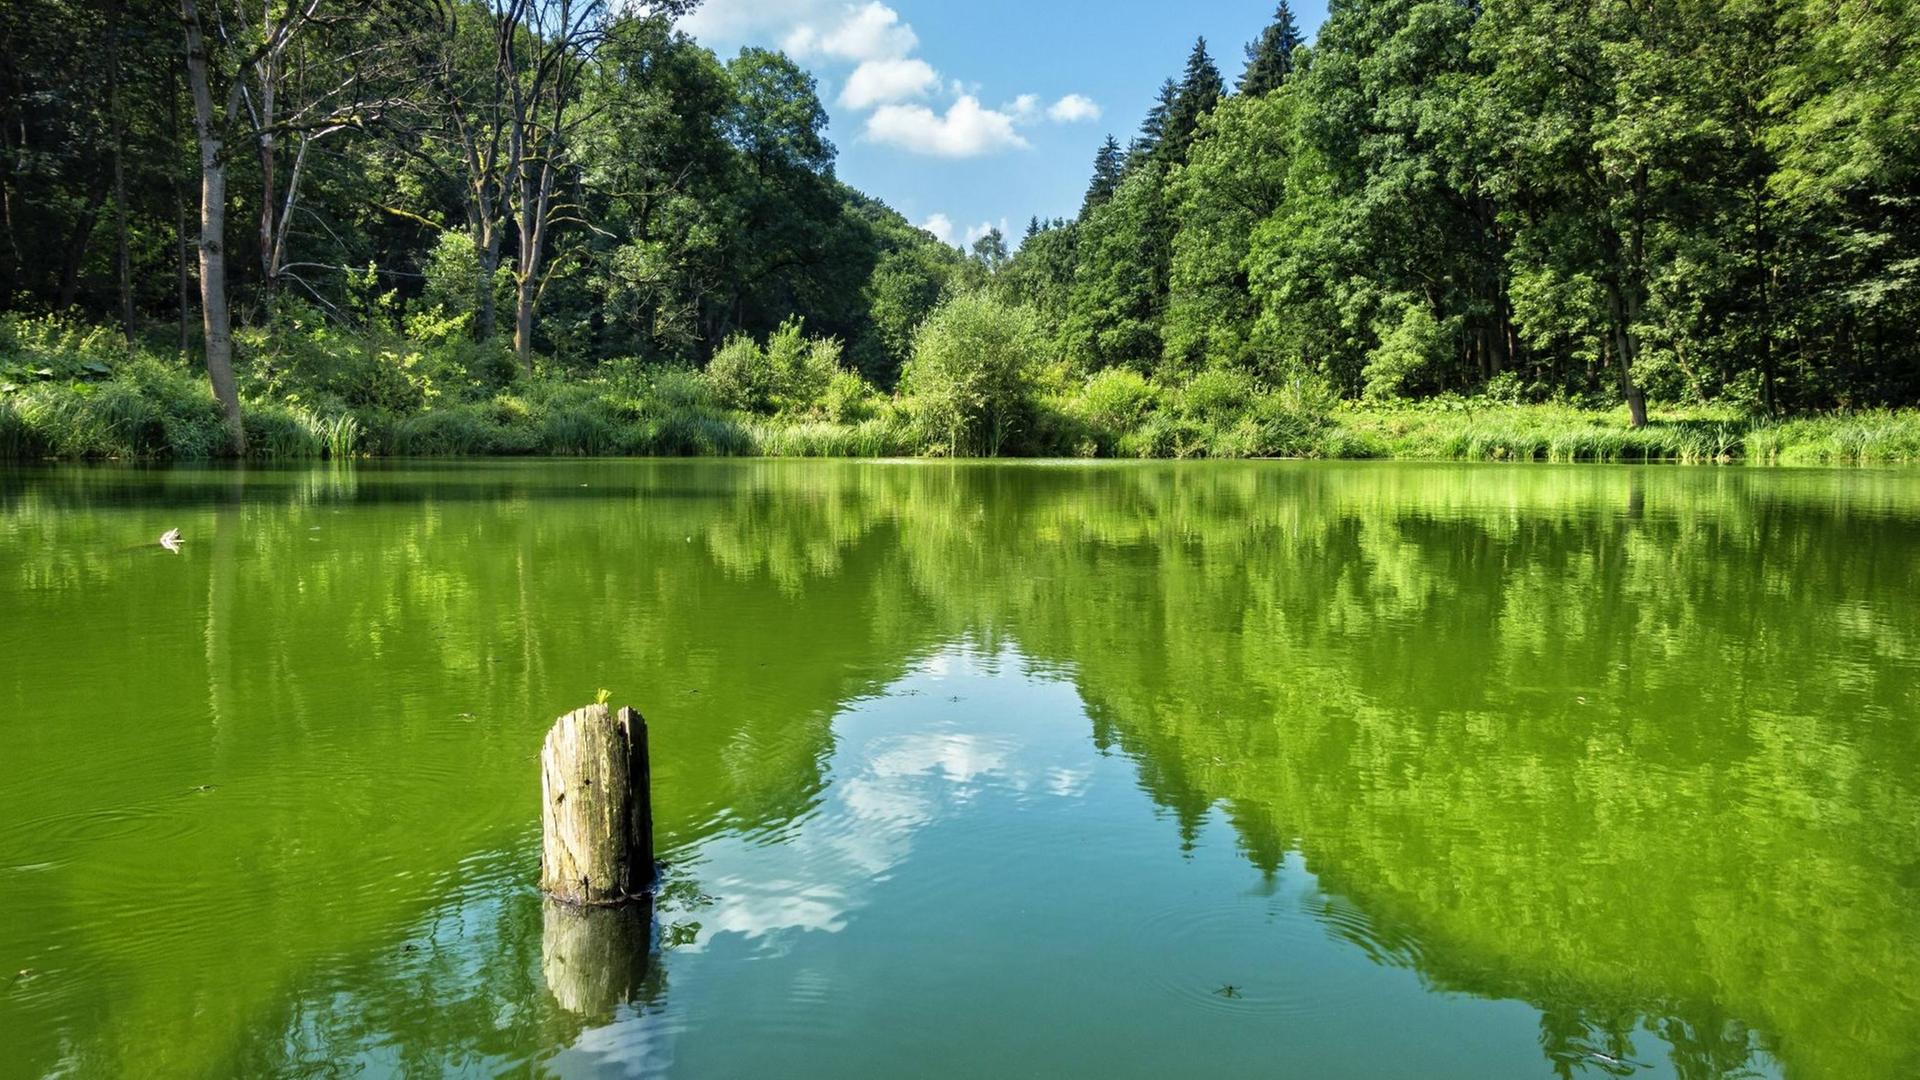 In einem stillen kleinen See spiegelt sich die grüne Landschaft wider.